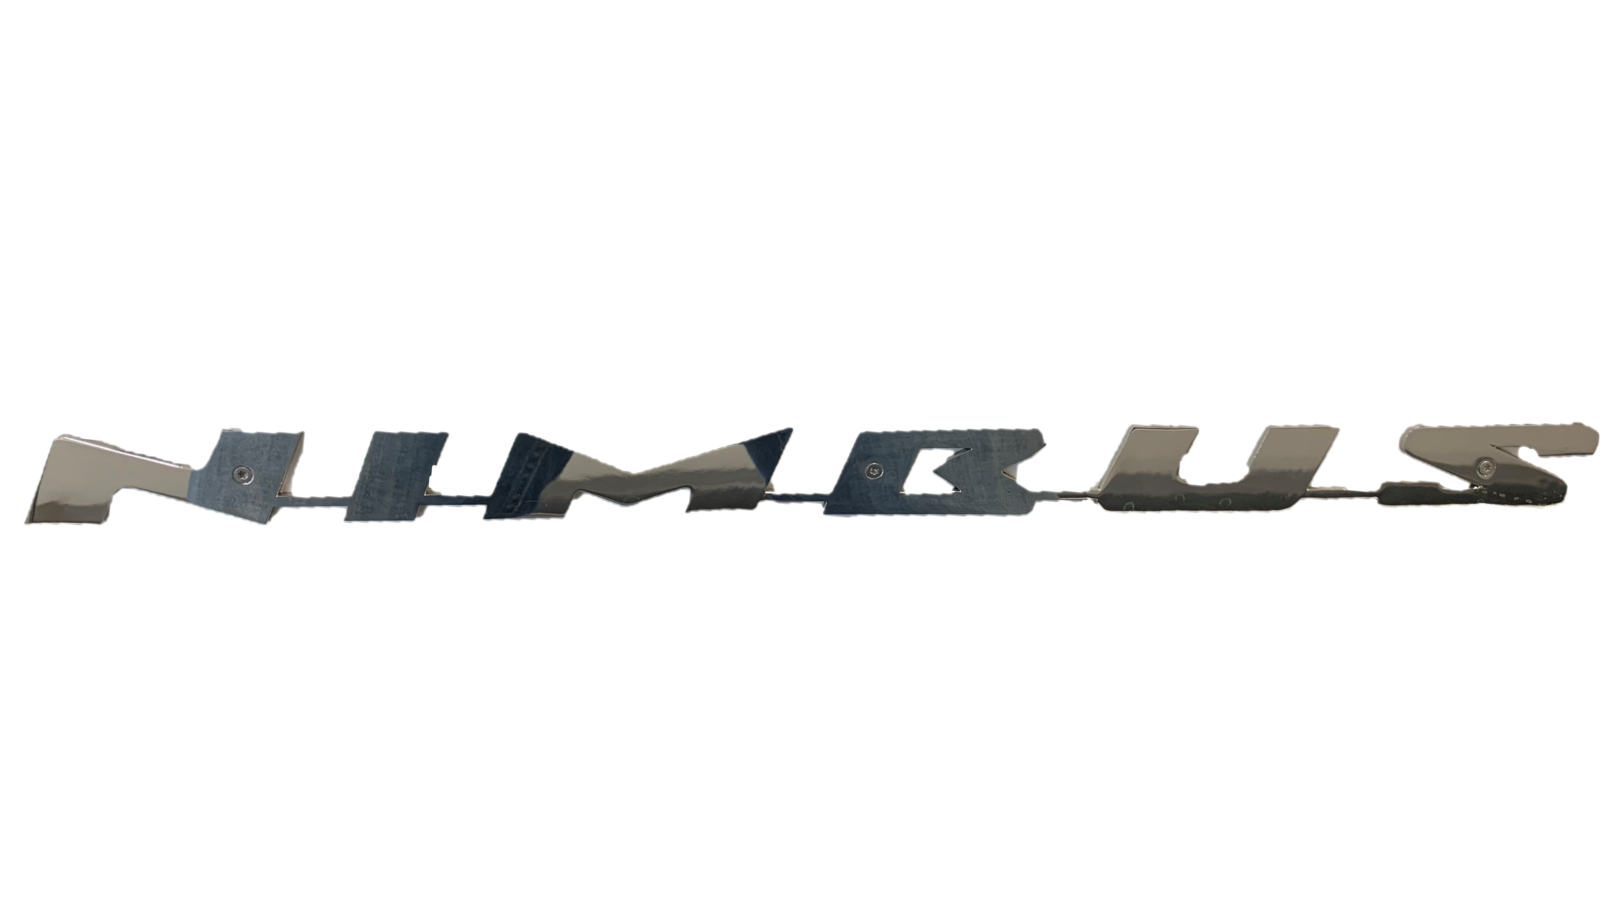 Emblem "Nimbus" 2020